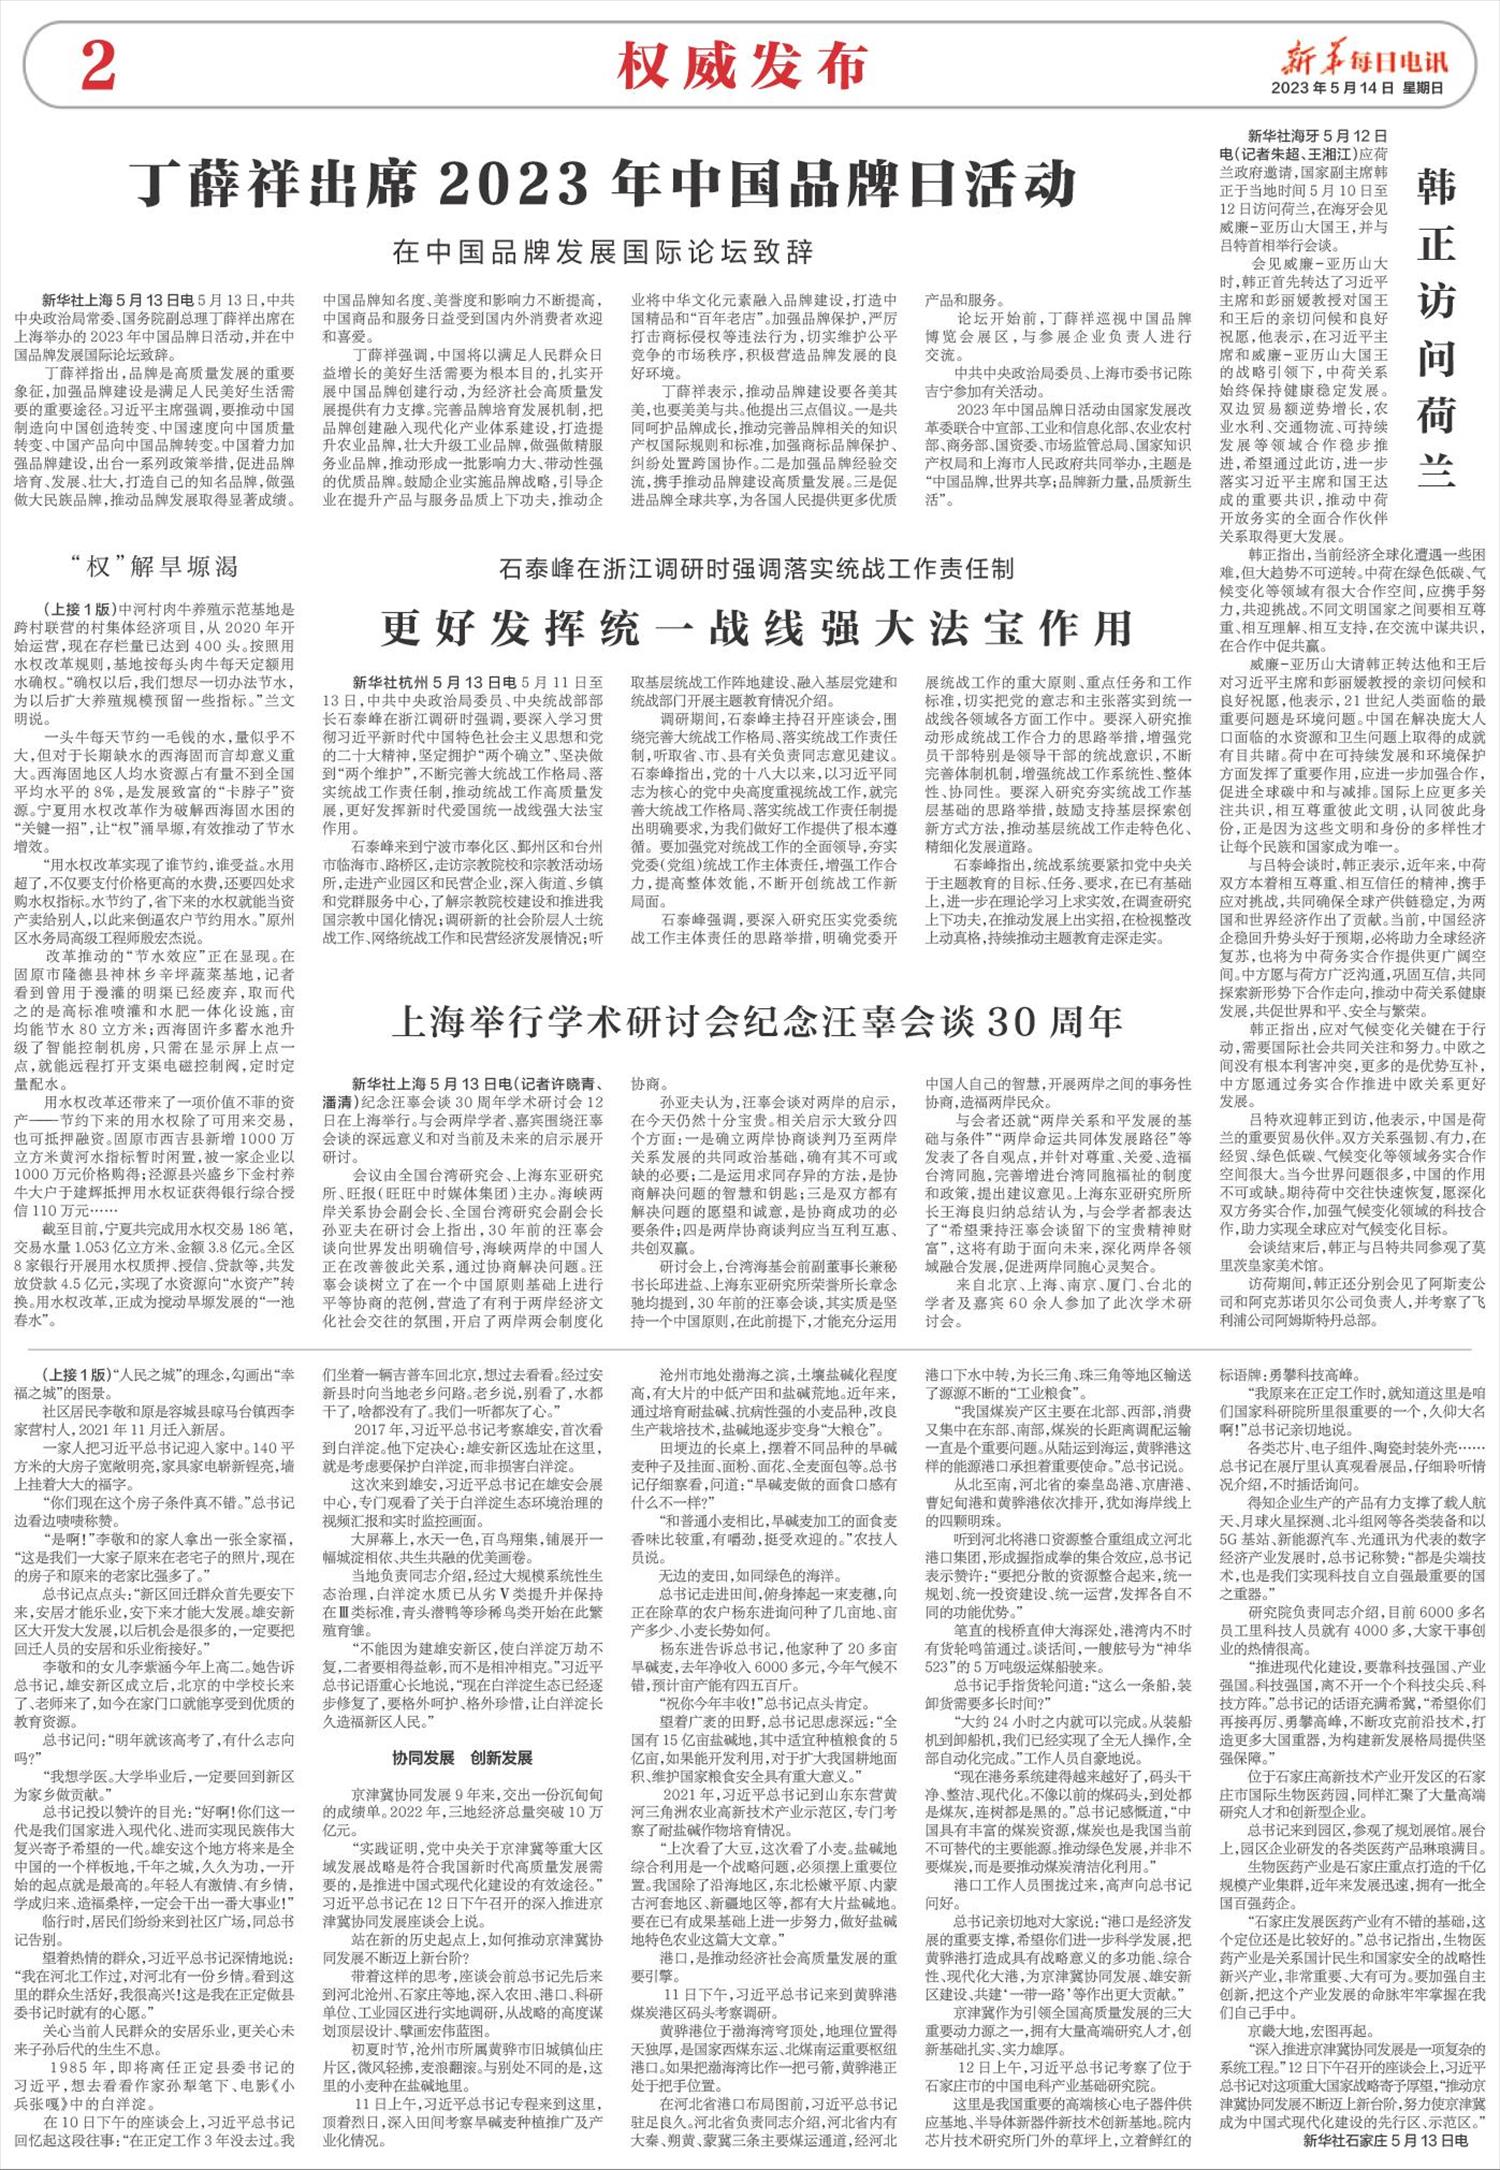 新华每日电讯-微报纸-2023年05月14日